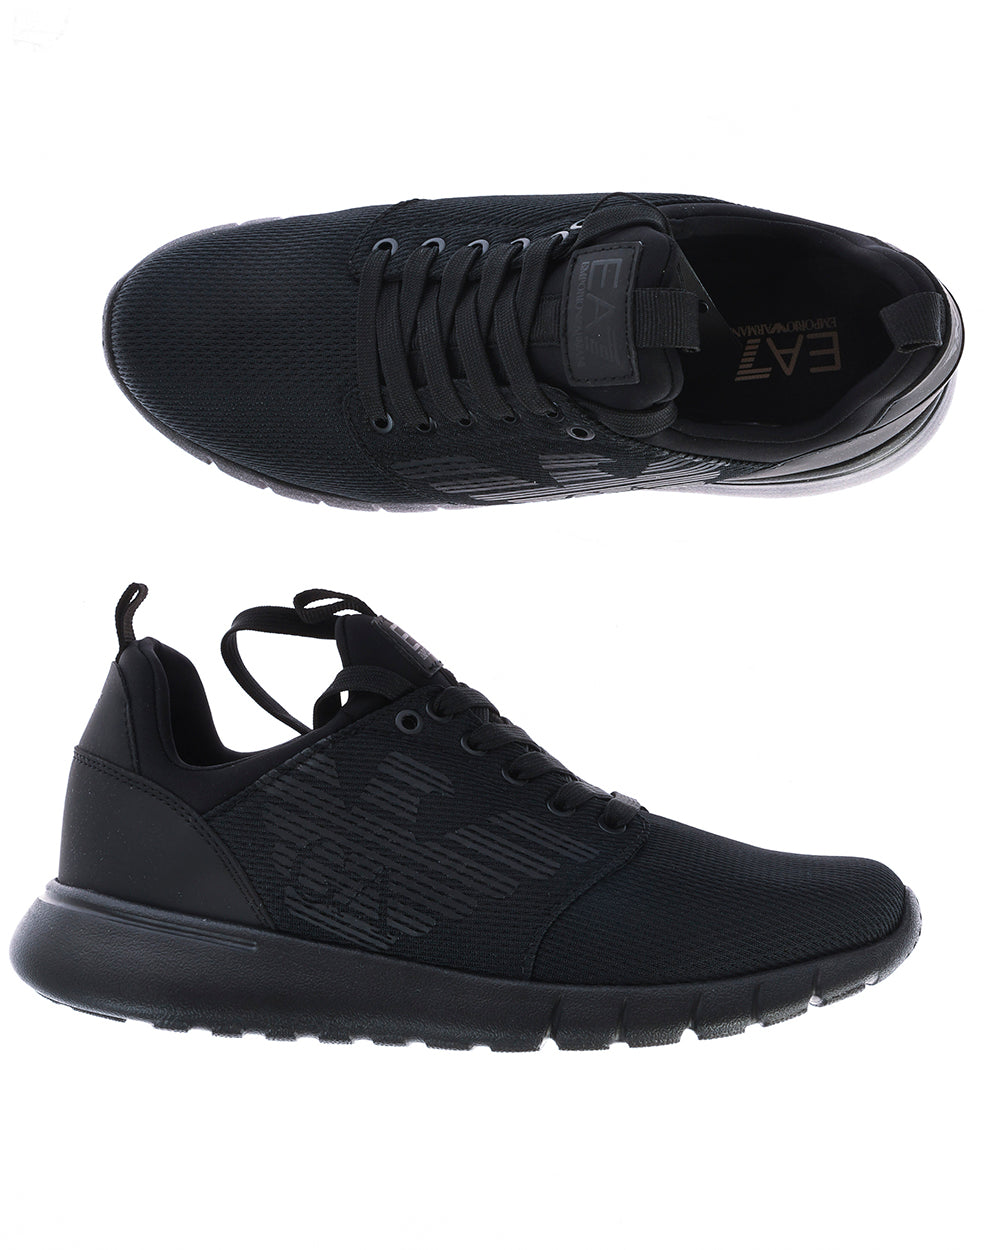 Sneakers EA7 8 Nero Scuro Emporio Armani - mem39